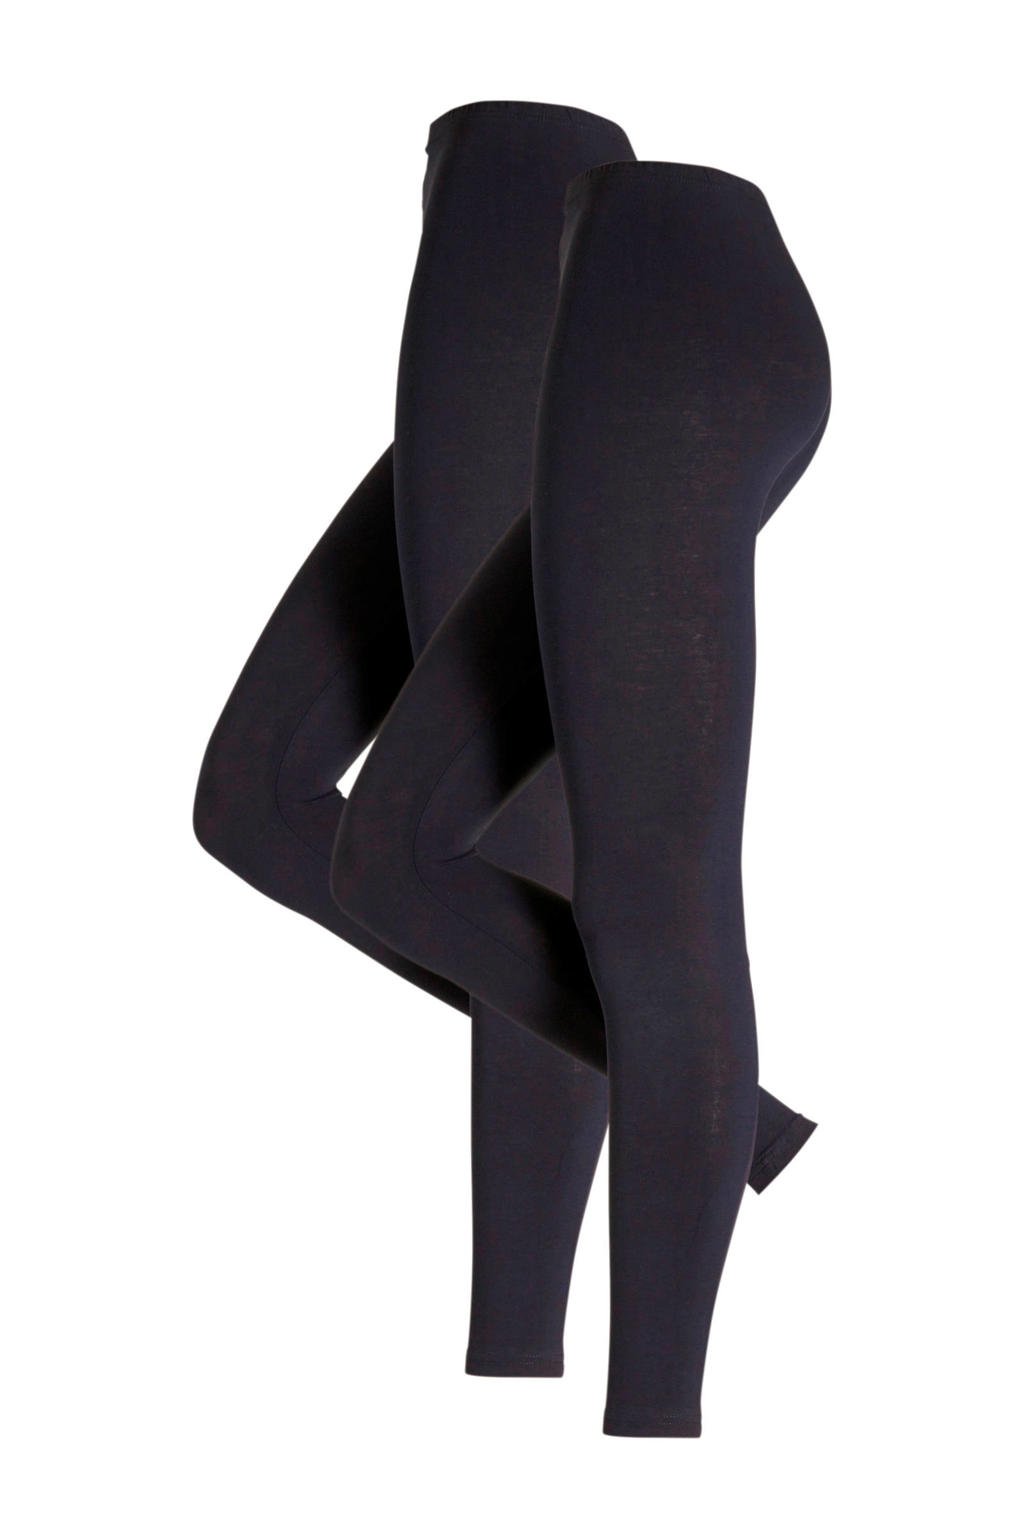 Set van 2 donkerblauwe dames whkmp's own legging van katoen met slim fit en regular waist